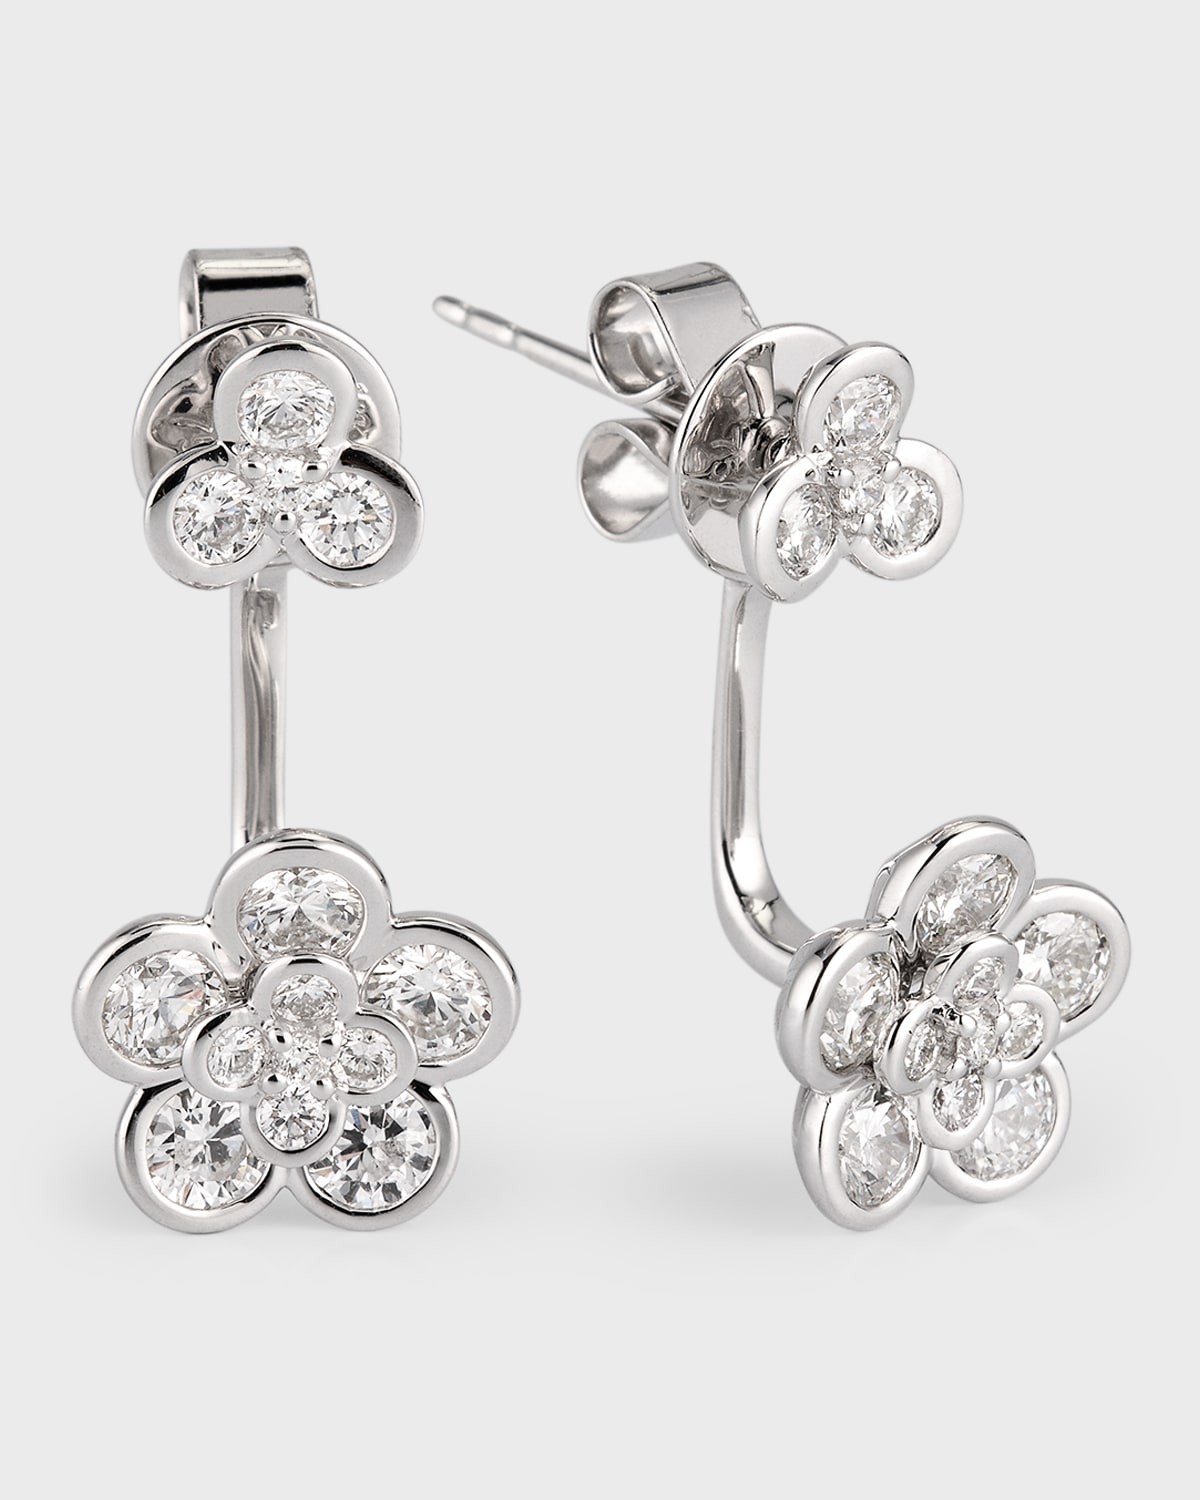 18K White Gold Cluster Diamond Flower Earring Jackets